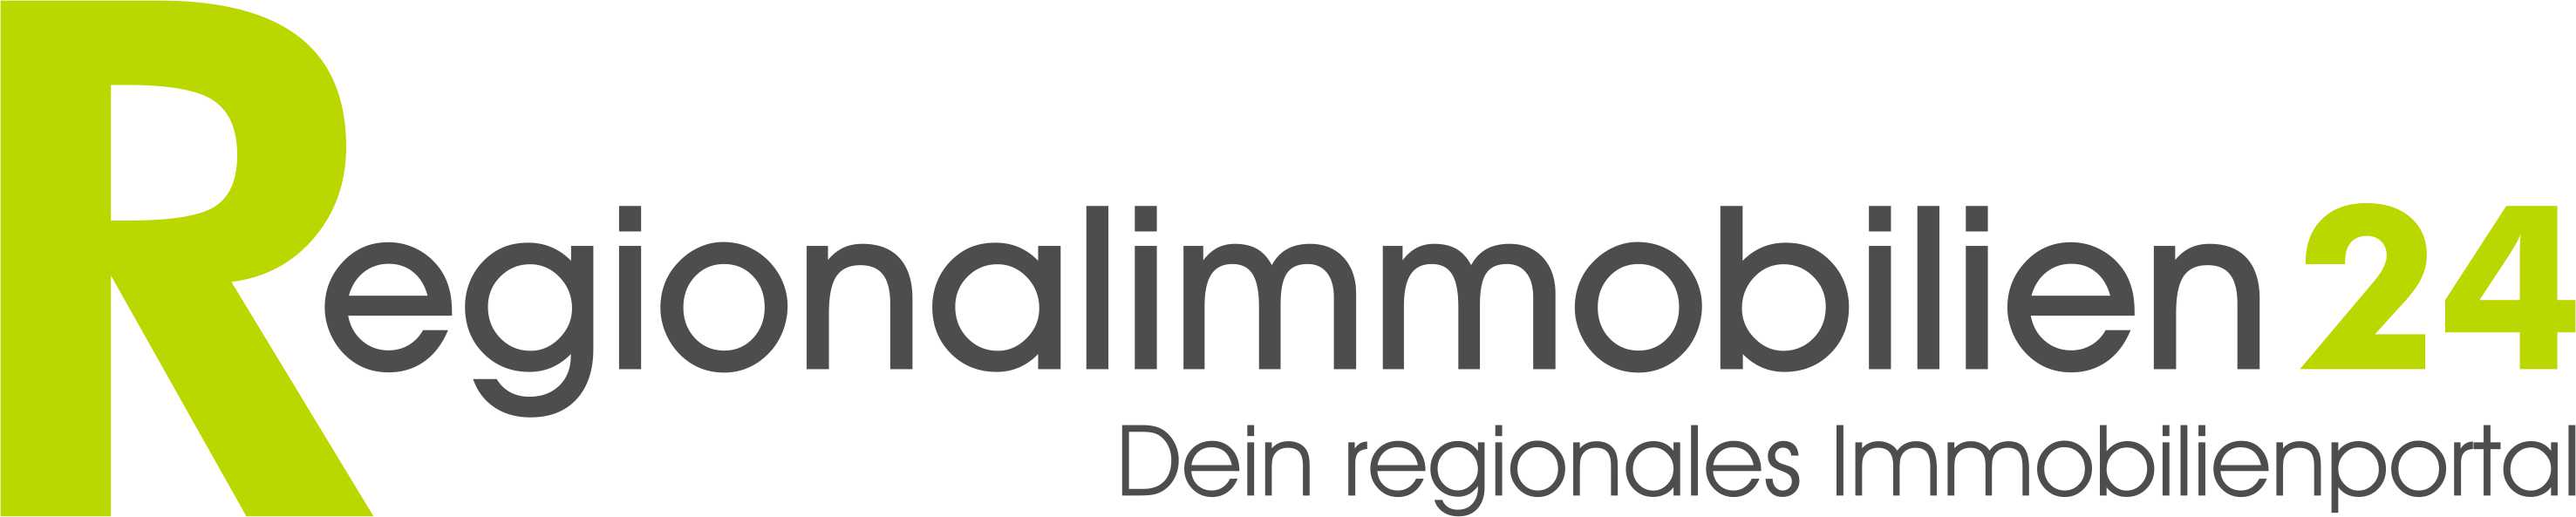 Bild 2 Regionalimmobilien24 GmbH in Plauen